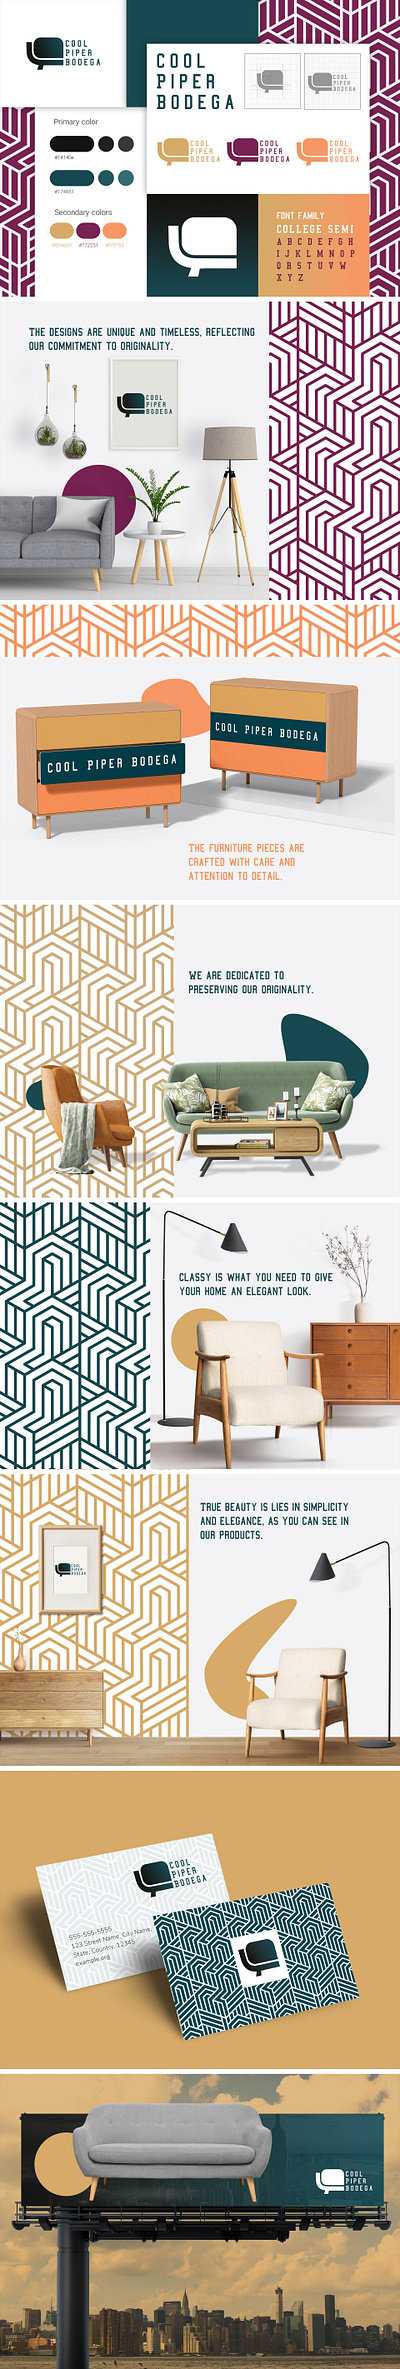 Go2trick agency client color color palette designer furniture graphic design log designer logo pallete